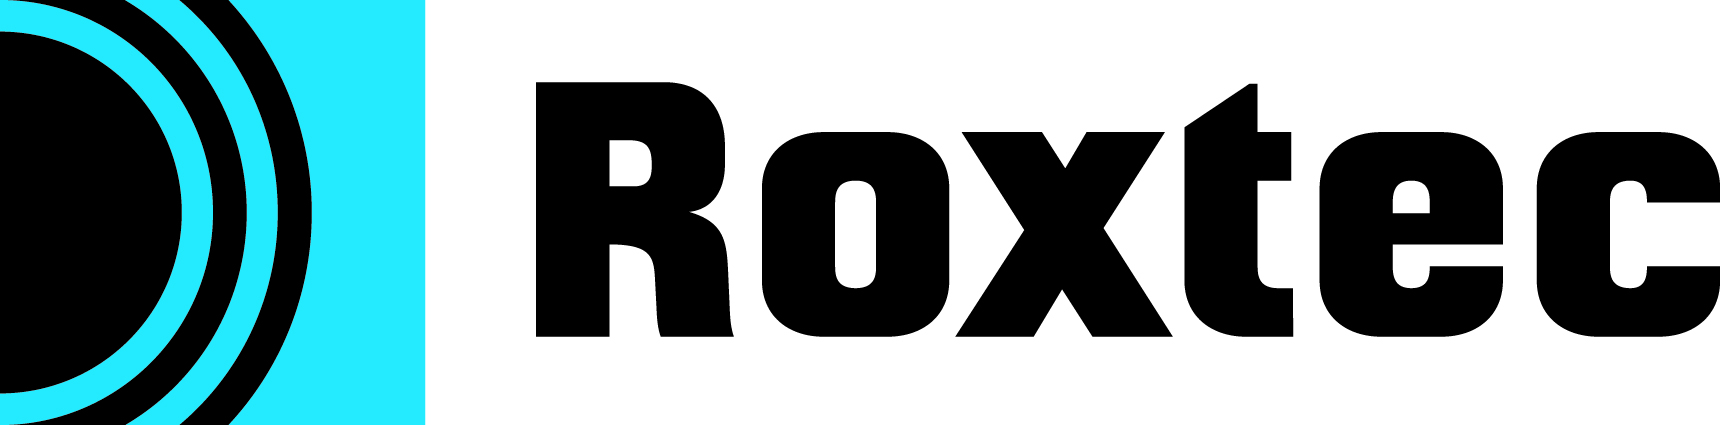 alt="Roxtec logo"